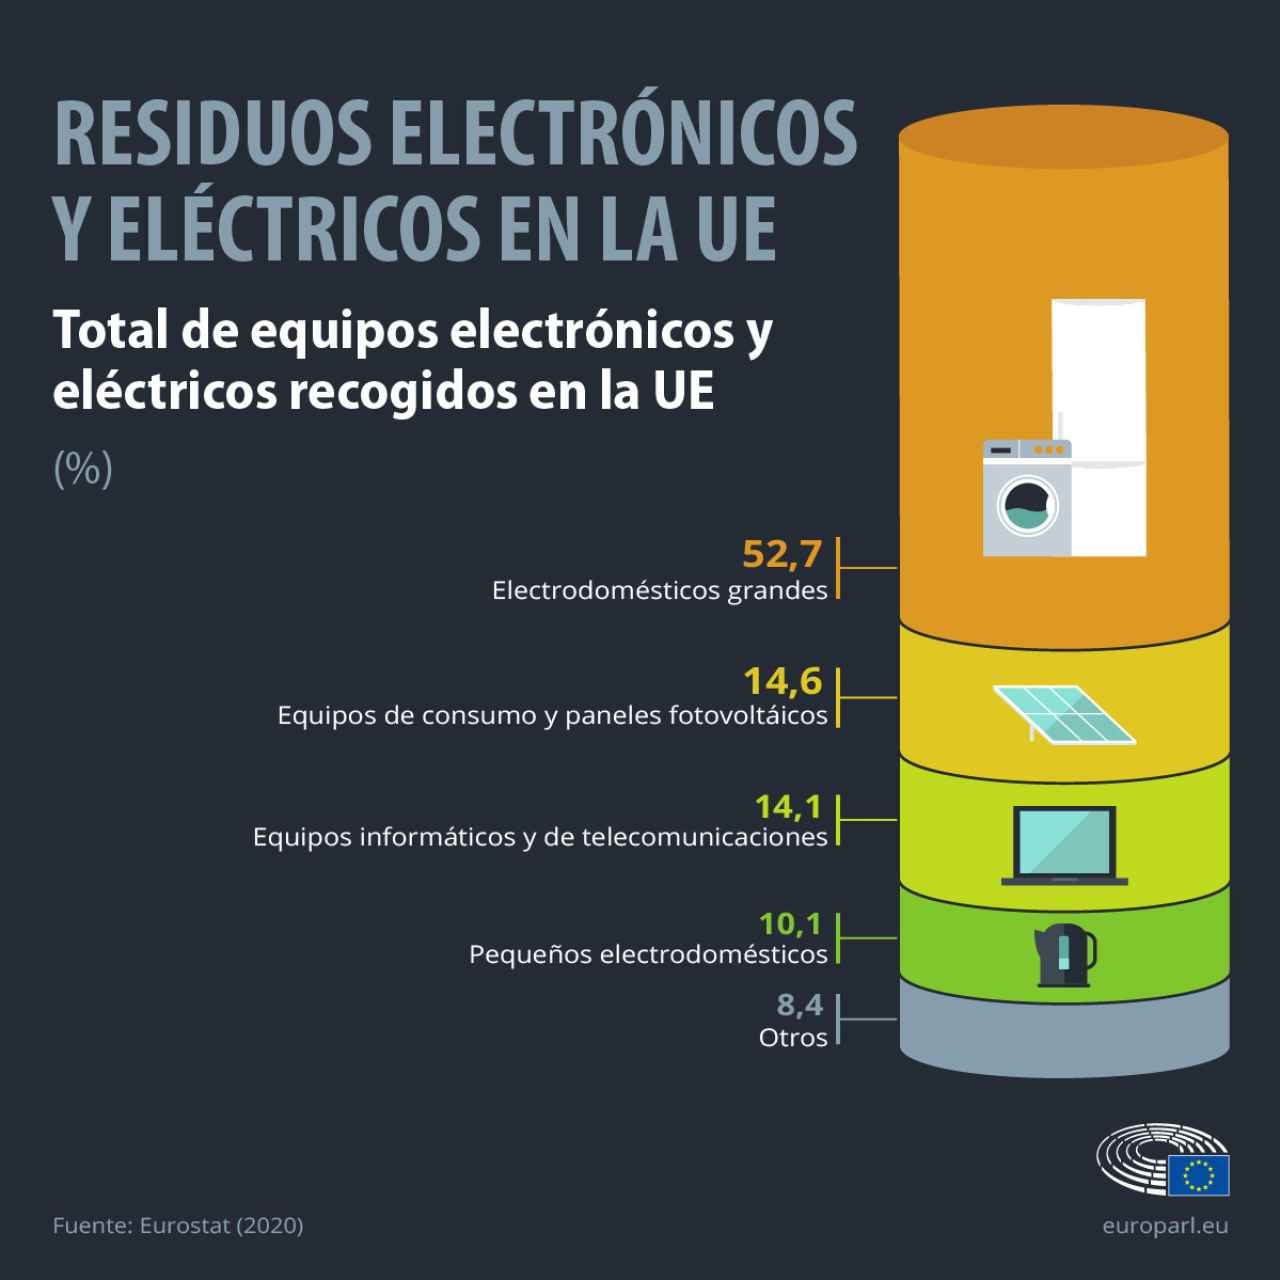 Los equipos informáticos y dispositivos de telecomunicaciones suponen el 14 % del total de los residuos eléctricos en la Unión Europea